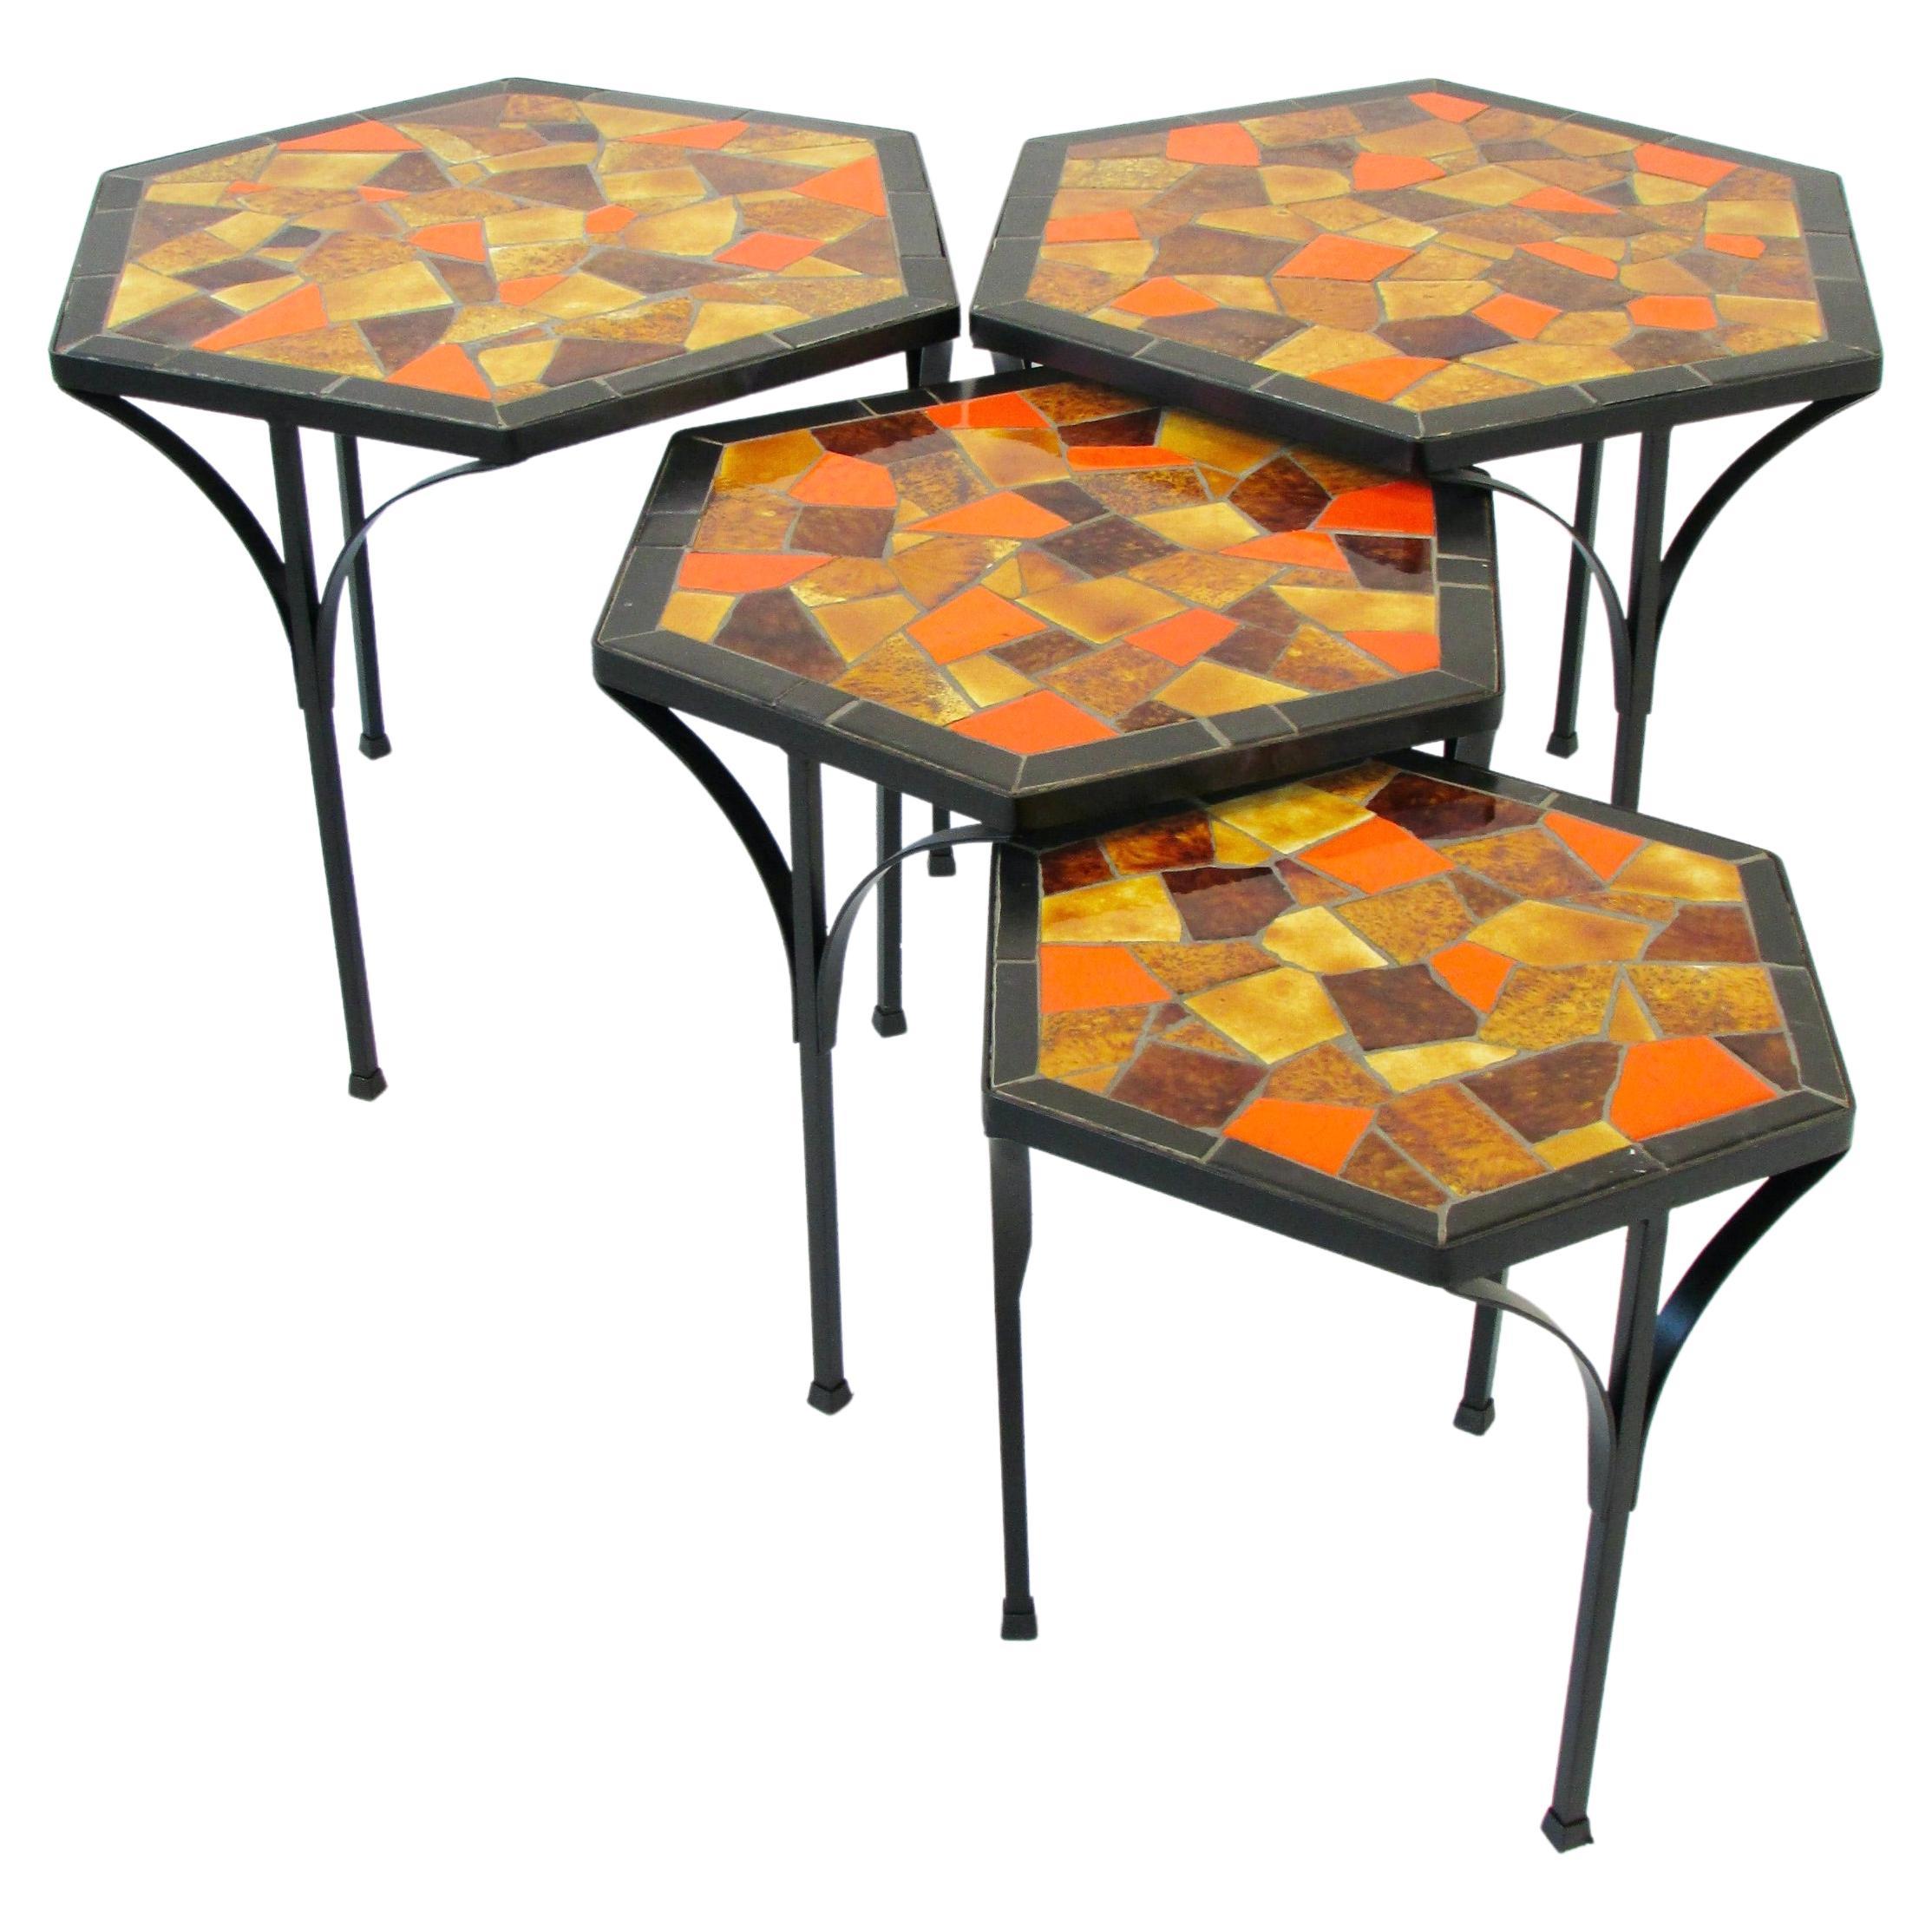 Jon Matin graduated Nest of Hexagonal Tile top Tables on Iron Base  